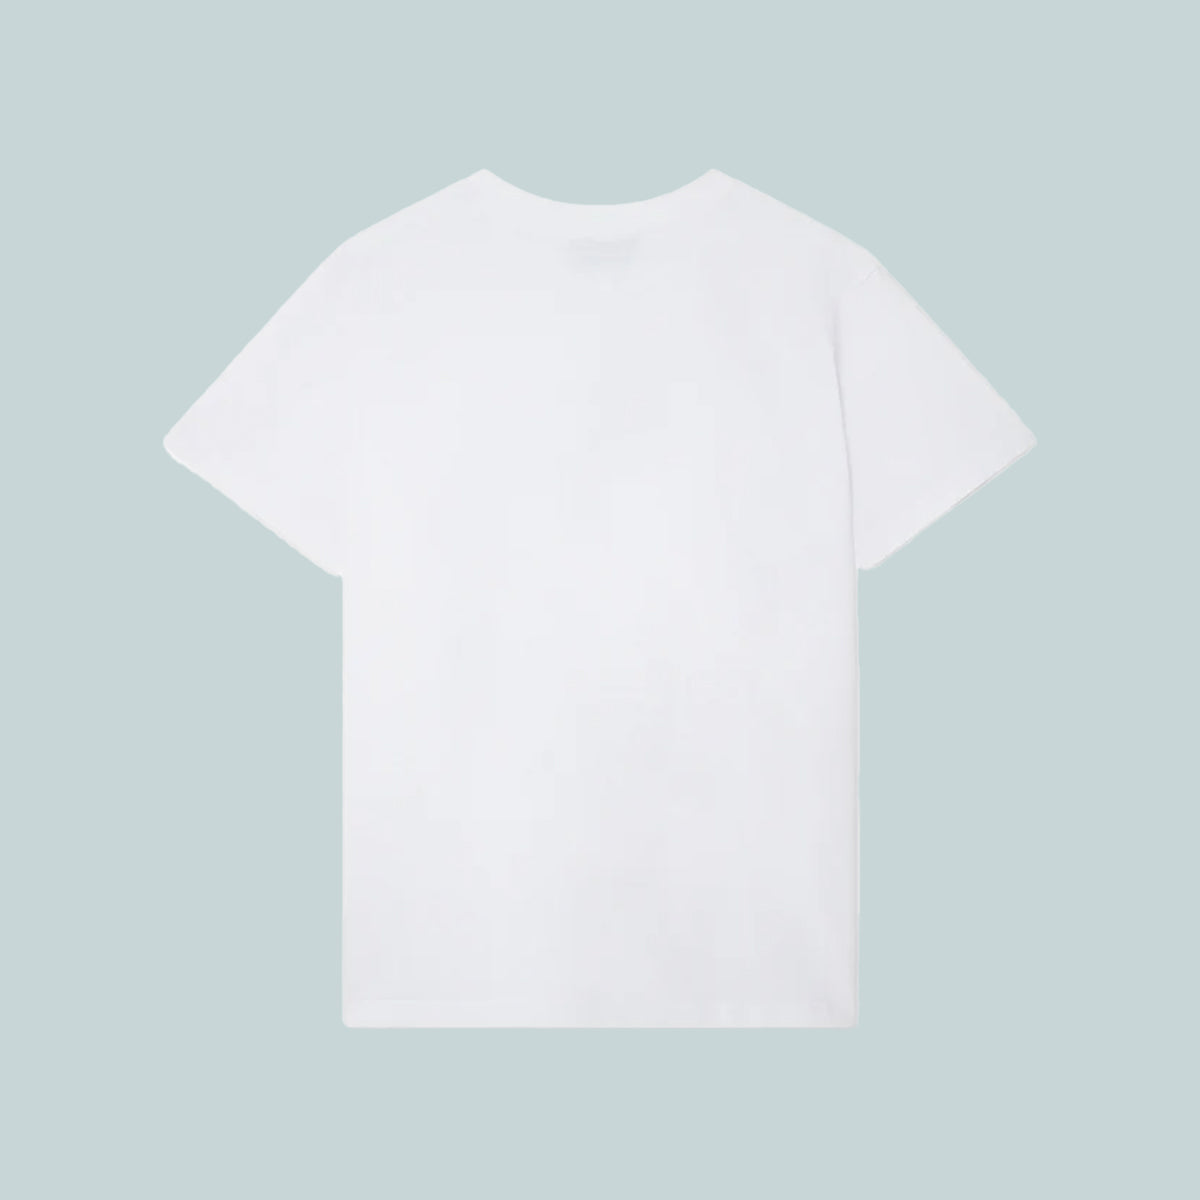 Tennis Club Icon Unisex T-Shirt White